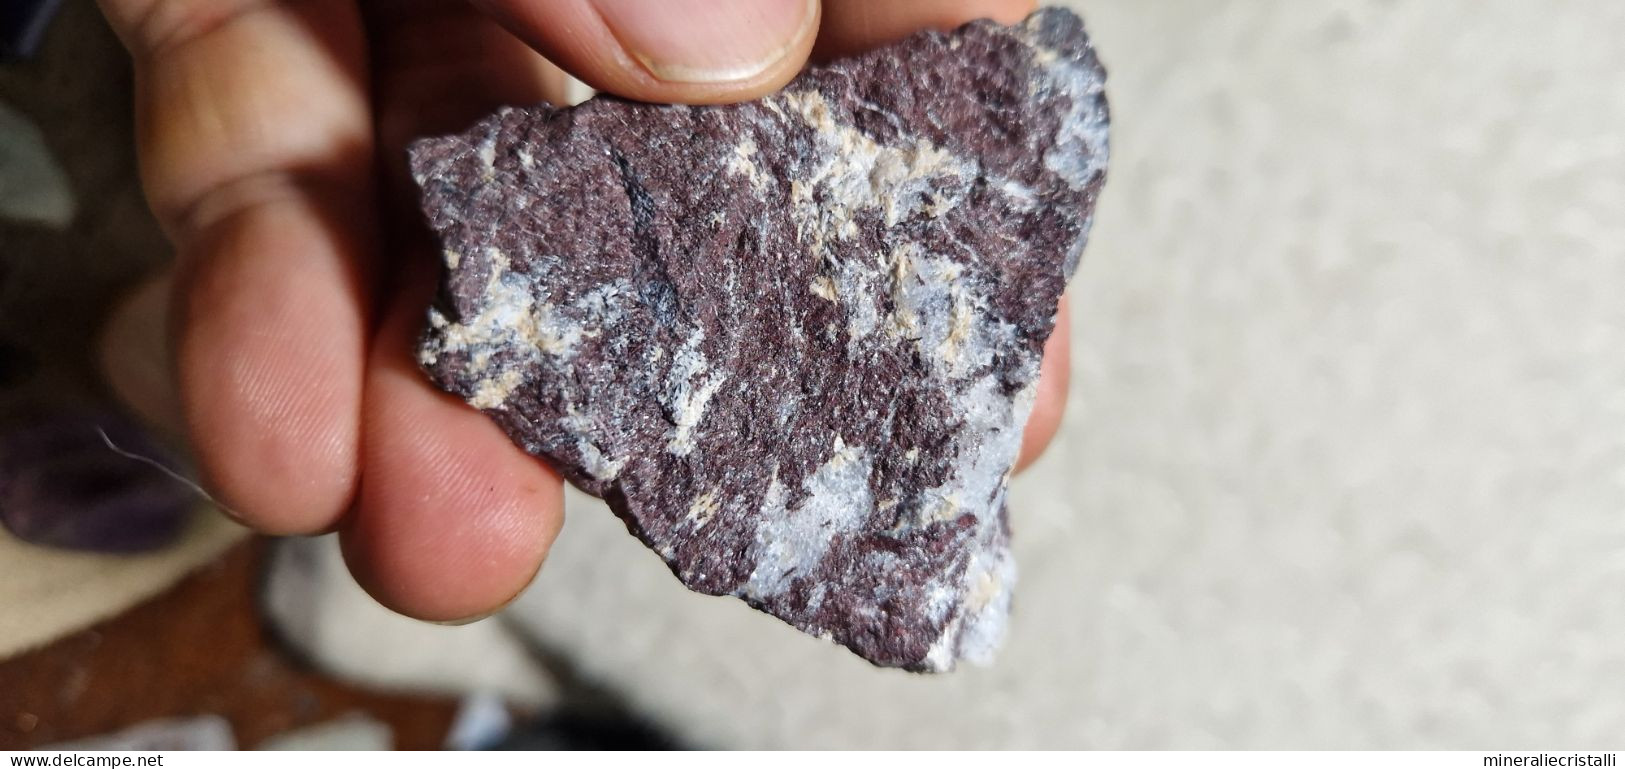 Piemontite Tremolite 42,73 Gr San Marcel Valle D'Aosta Italia - Mineralien